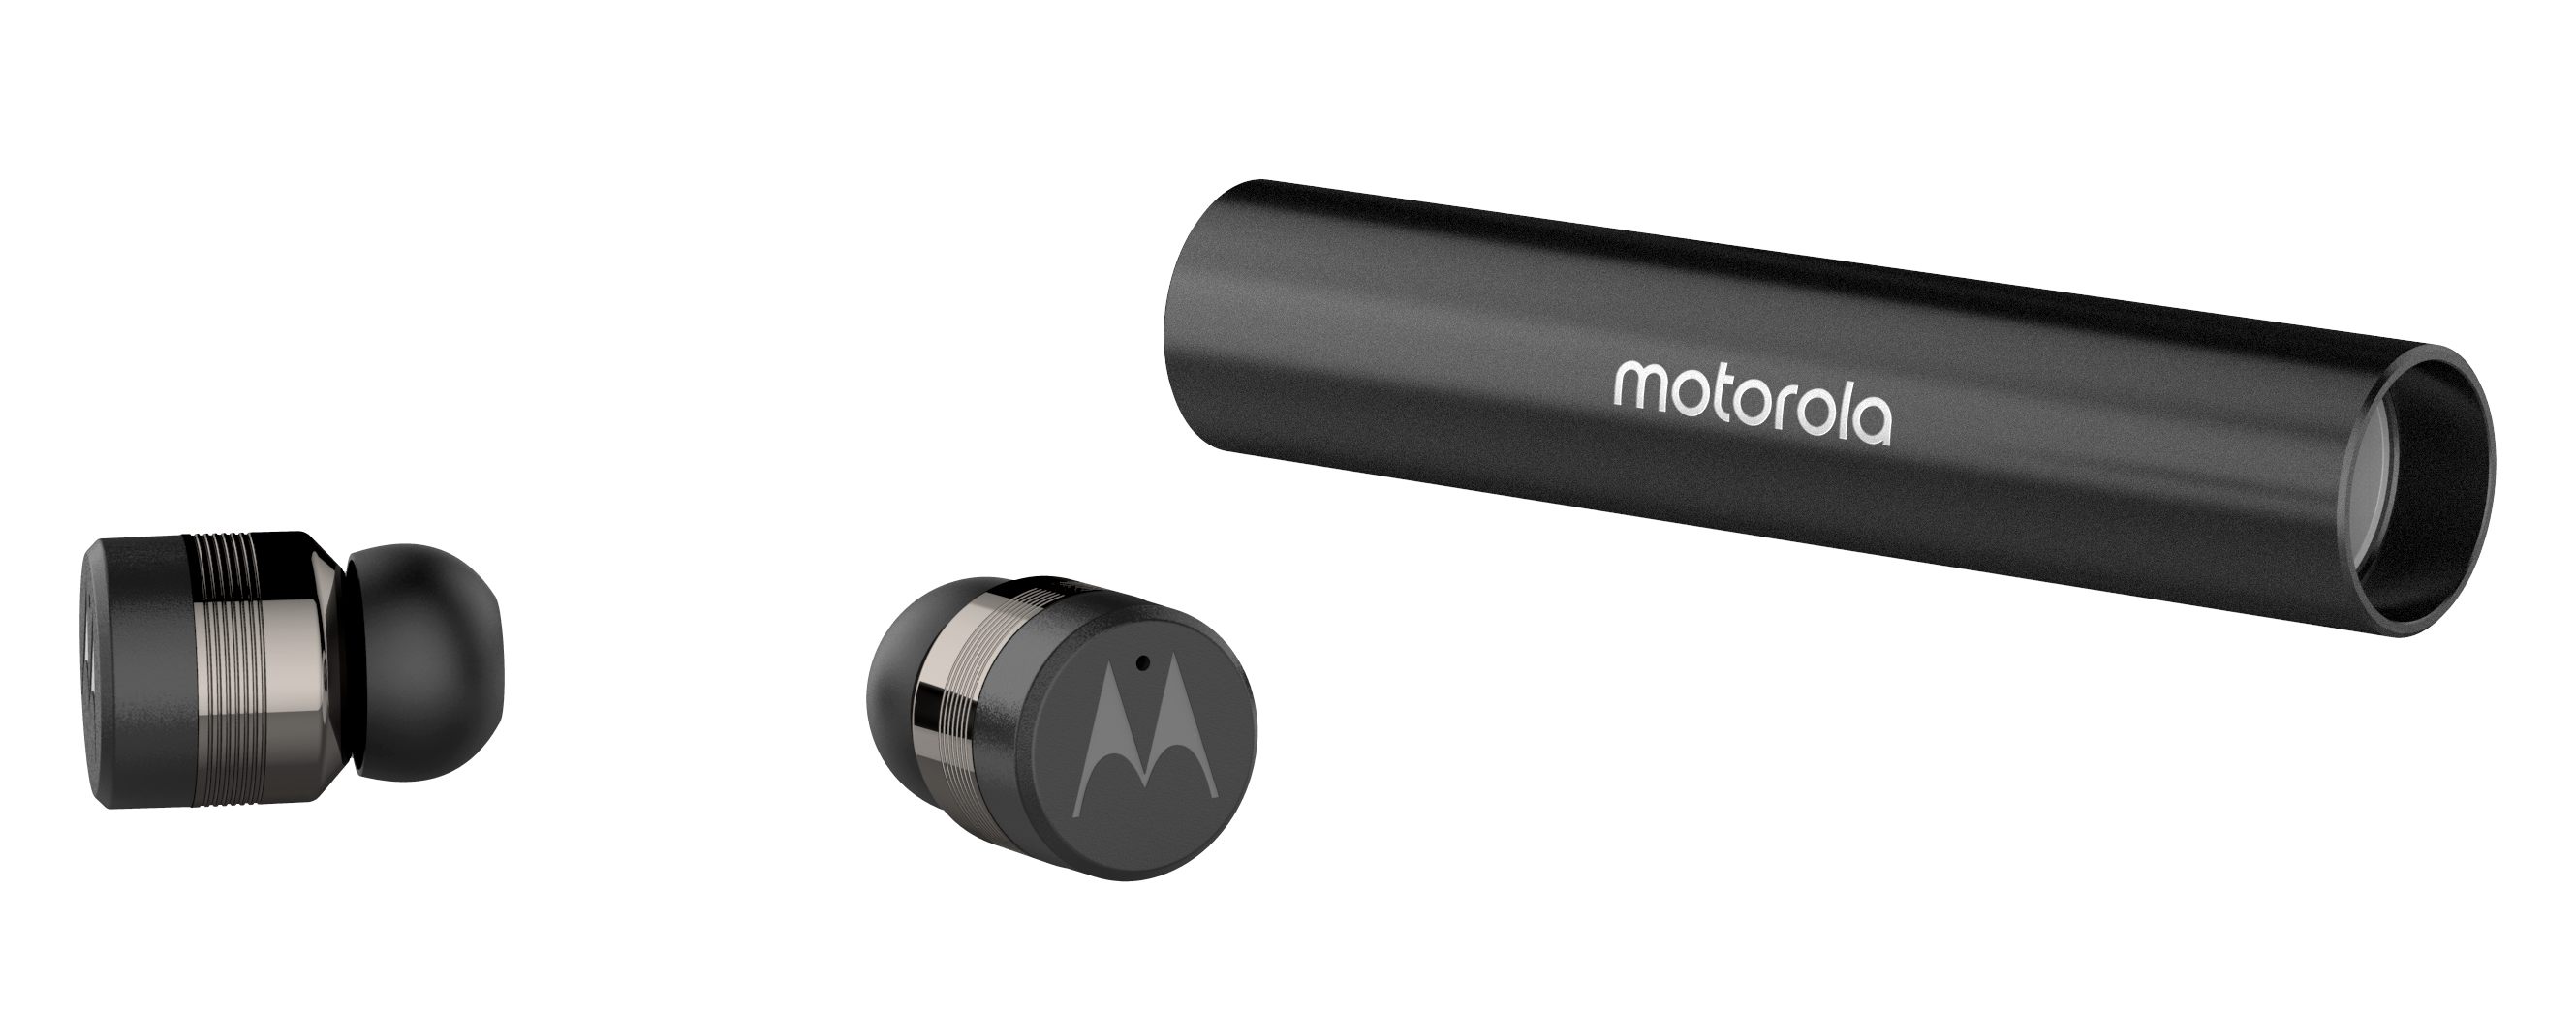 Los auriculares más compactos - tecnolocura - Motorola VerveBuds 300 (2)